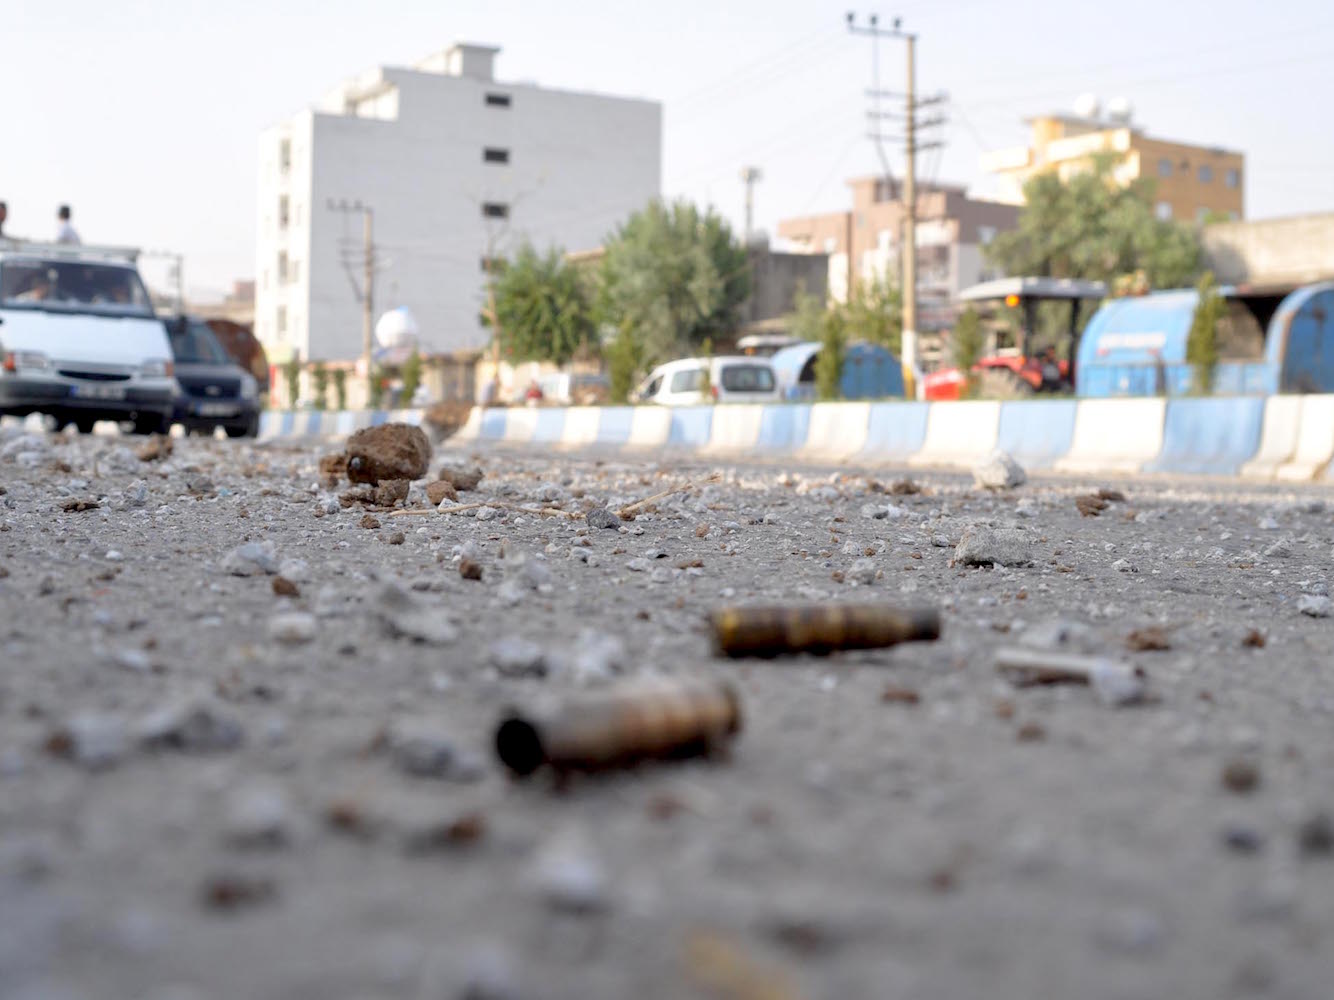 Cizre'de 2 kardeş öldürüldü iddiası